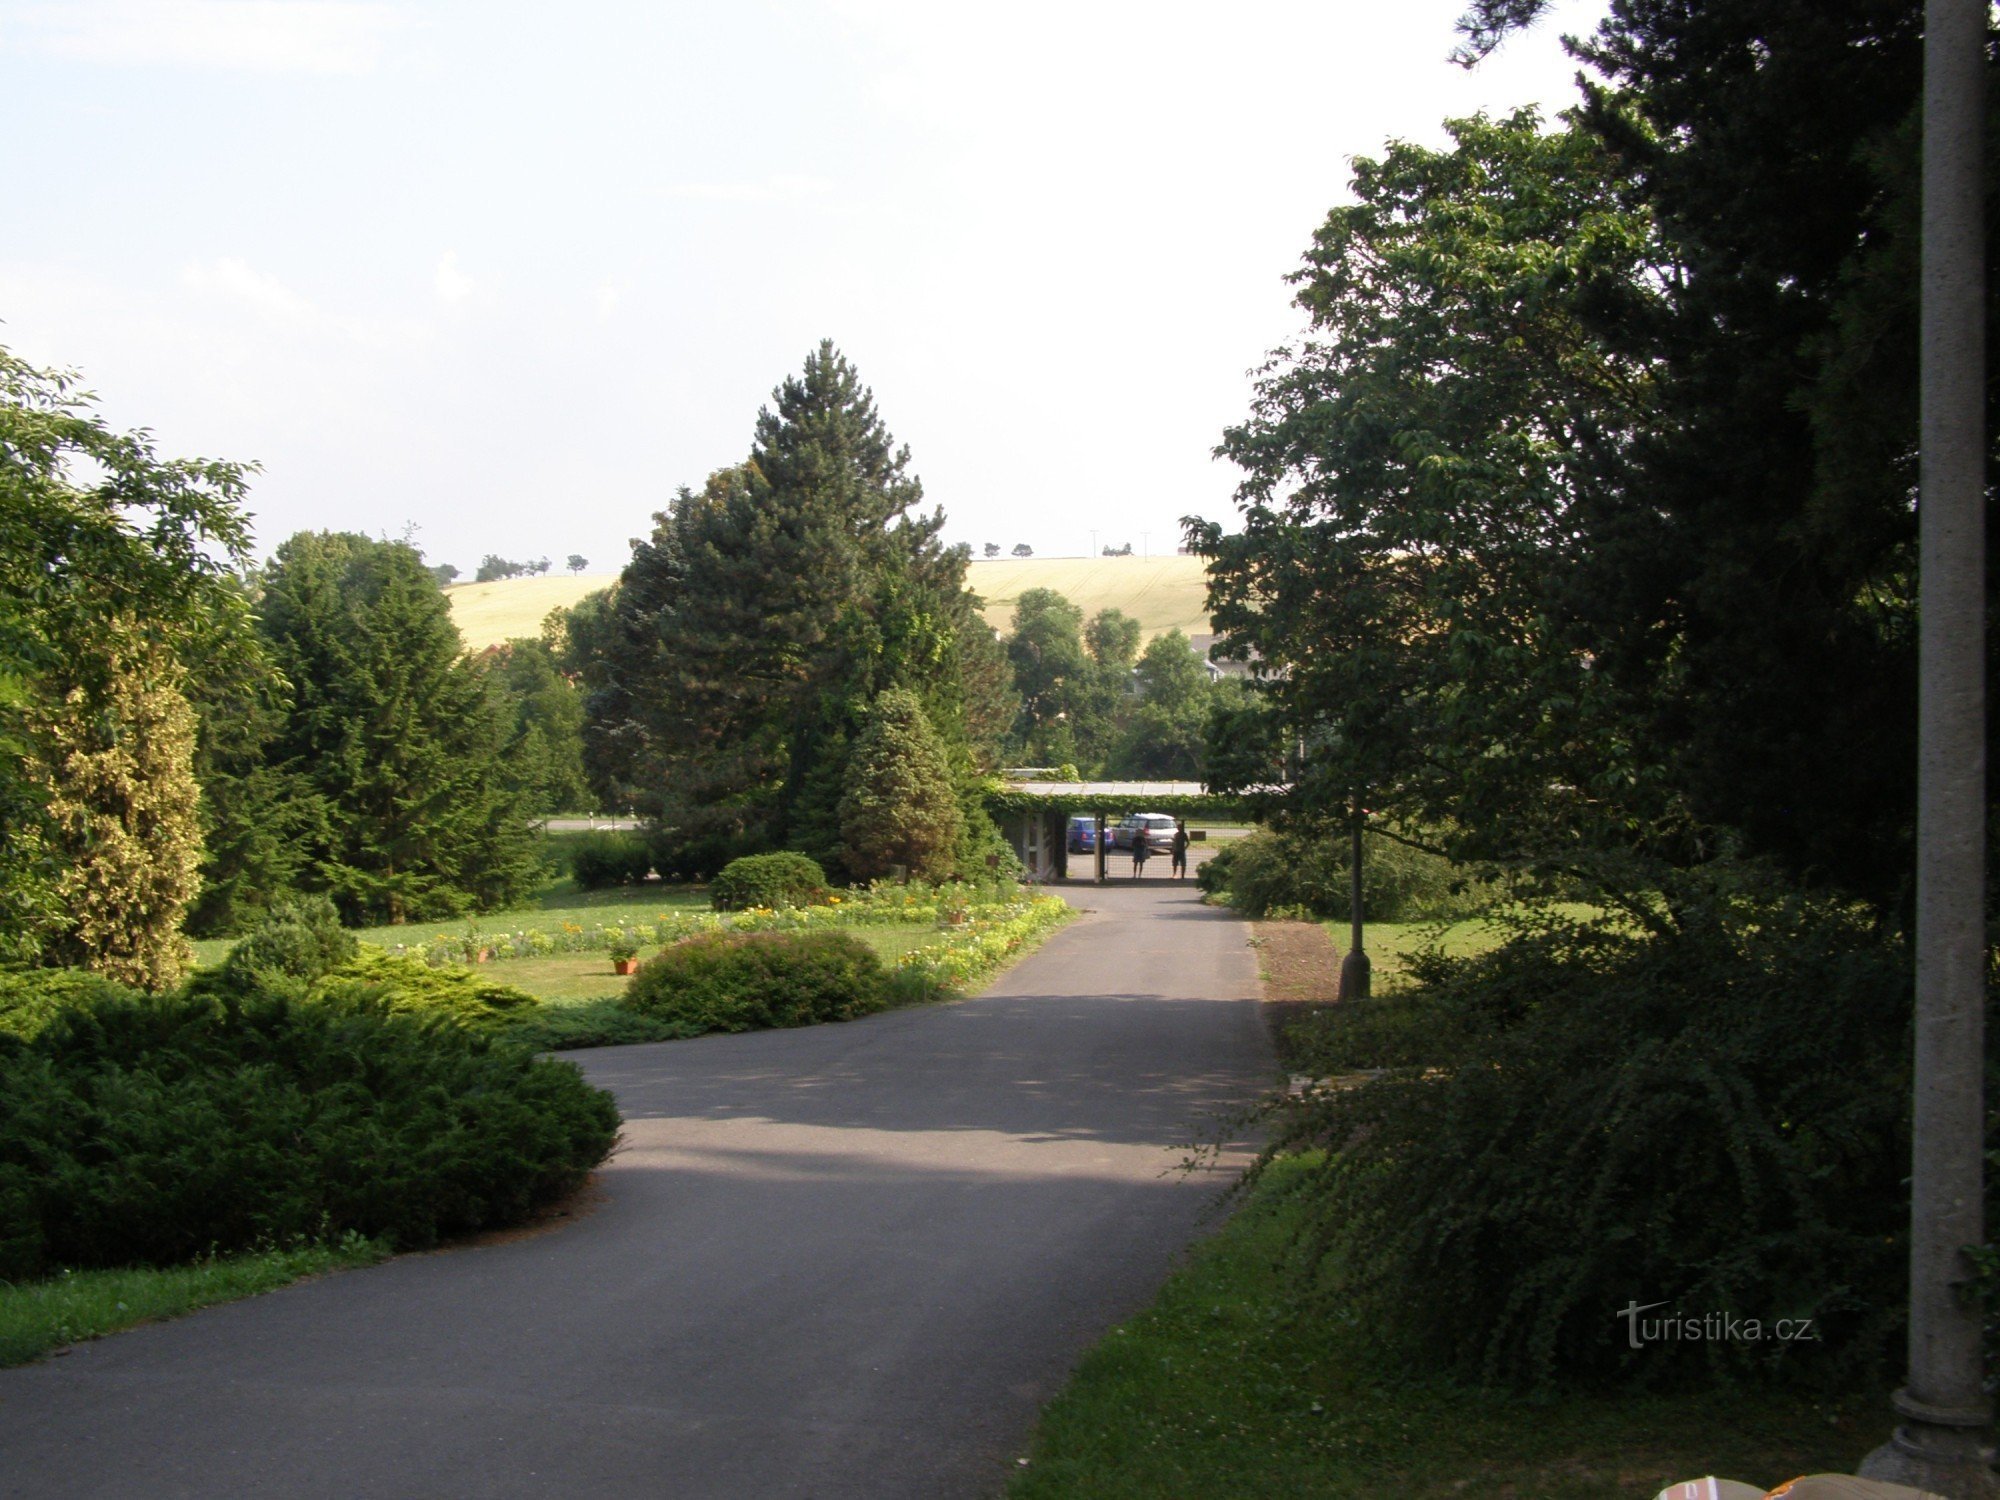 Arboretum Nový Dvůr cerca de Opava